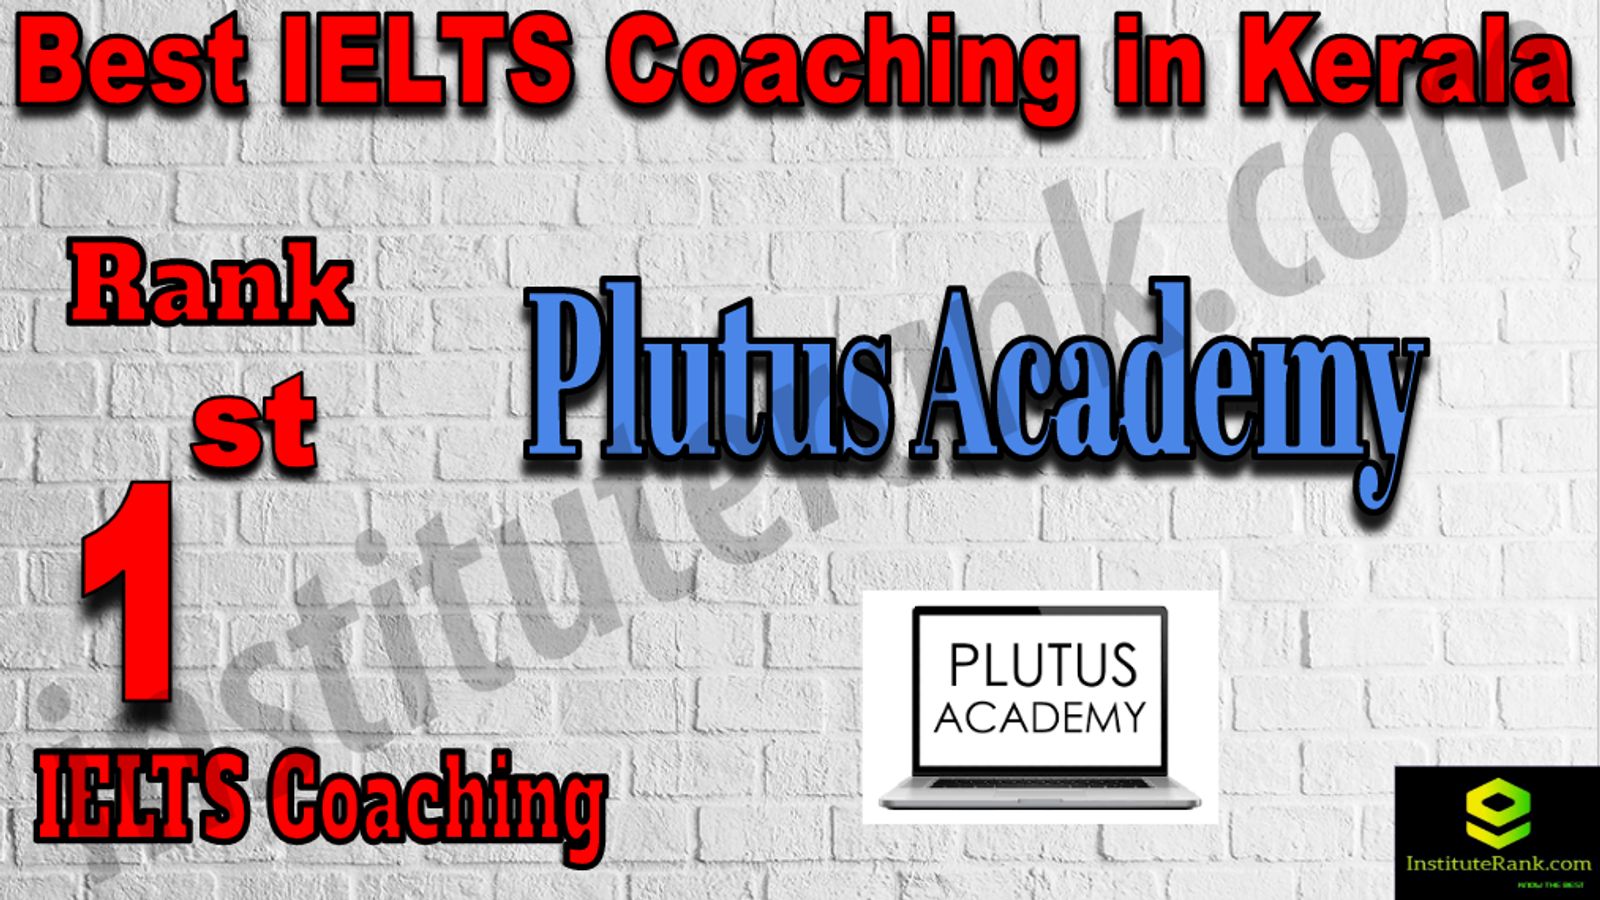 Best IELTS Coaching in Kerala